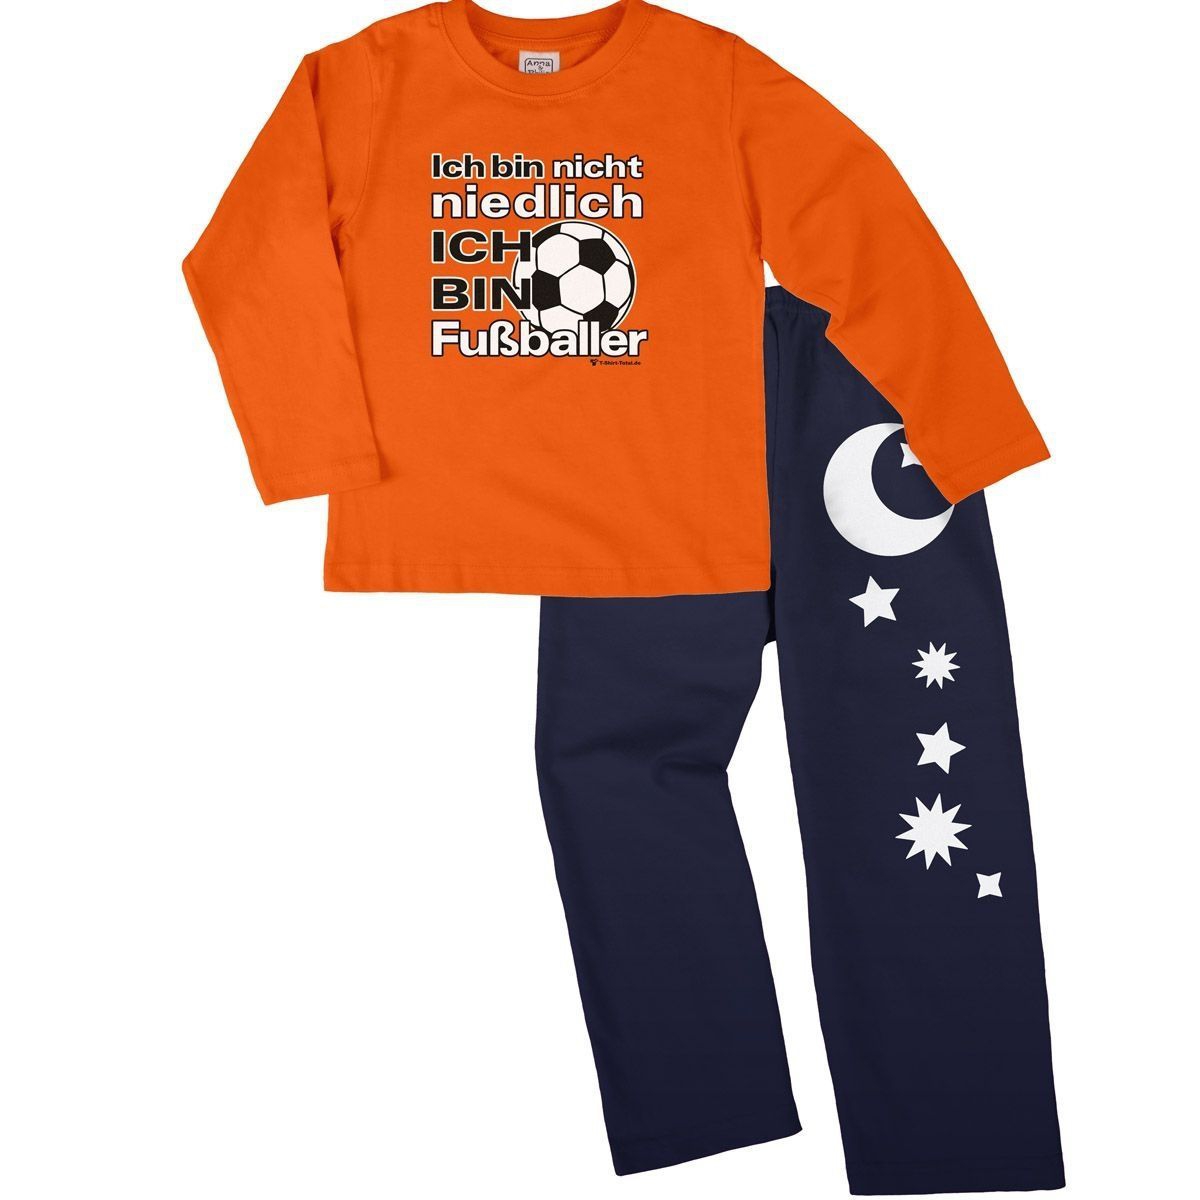 Niedlich Fußballer Pyjama Set orange / navy 110 / 116